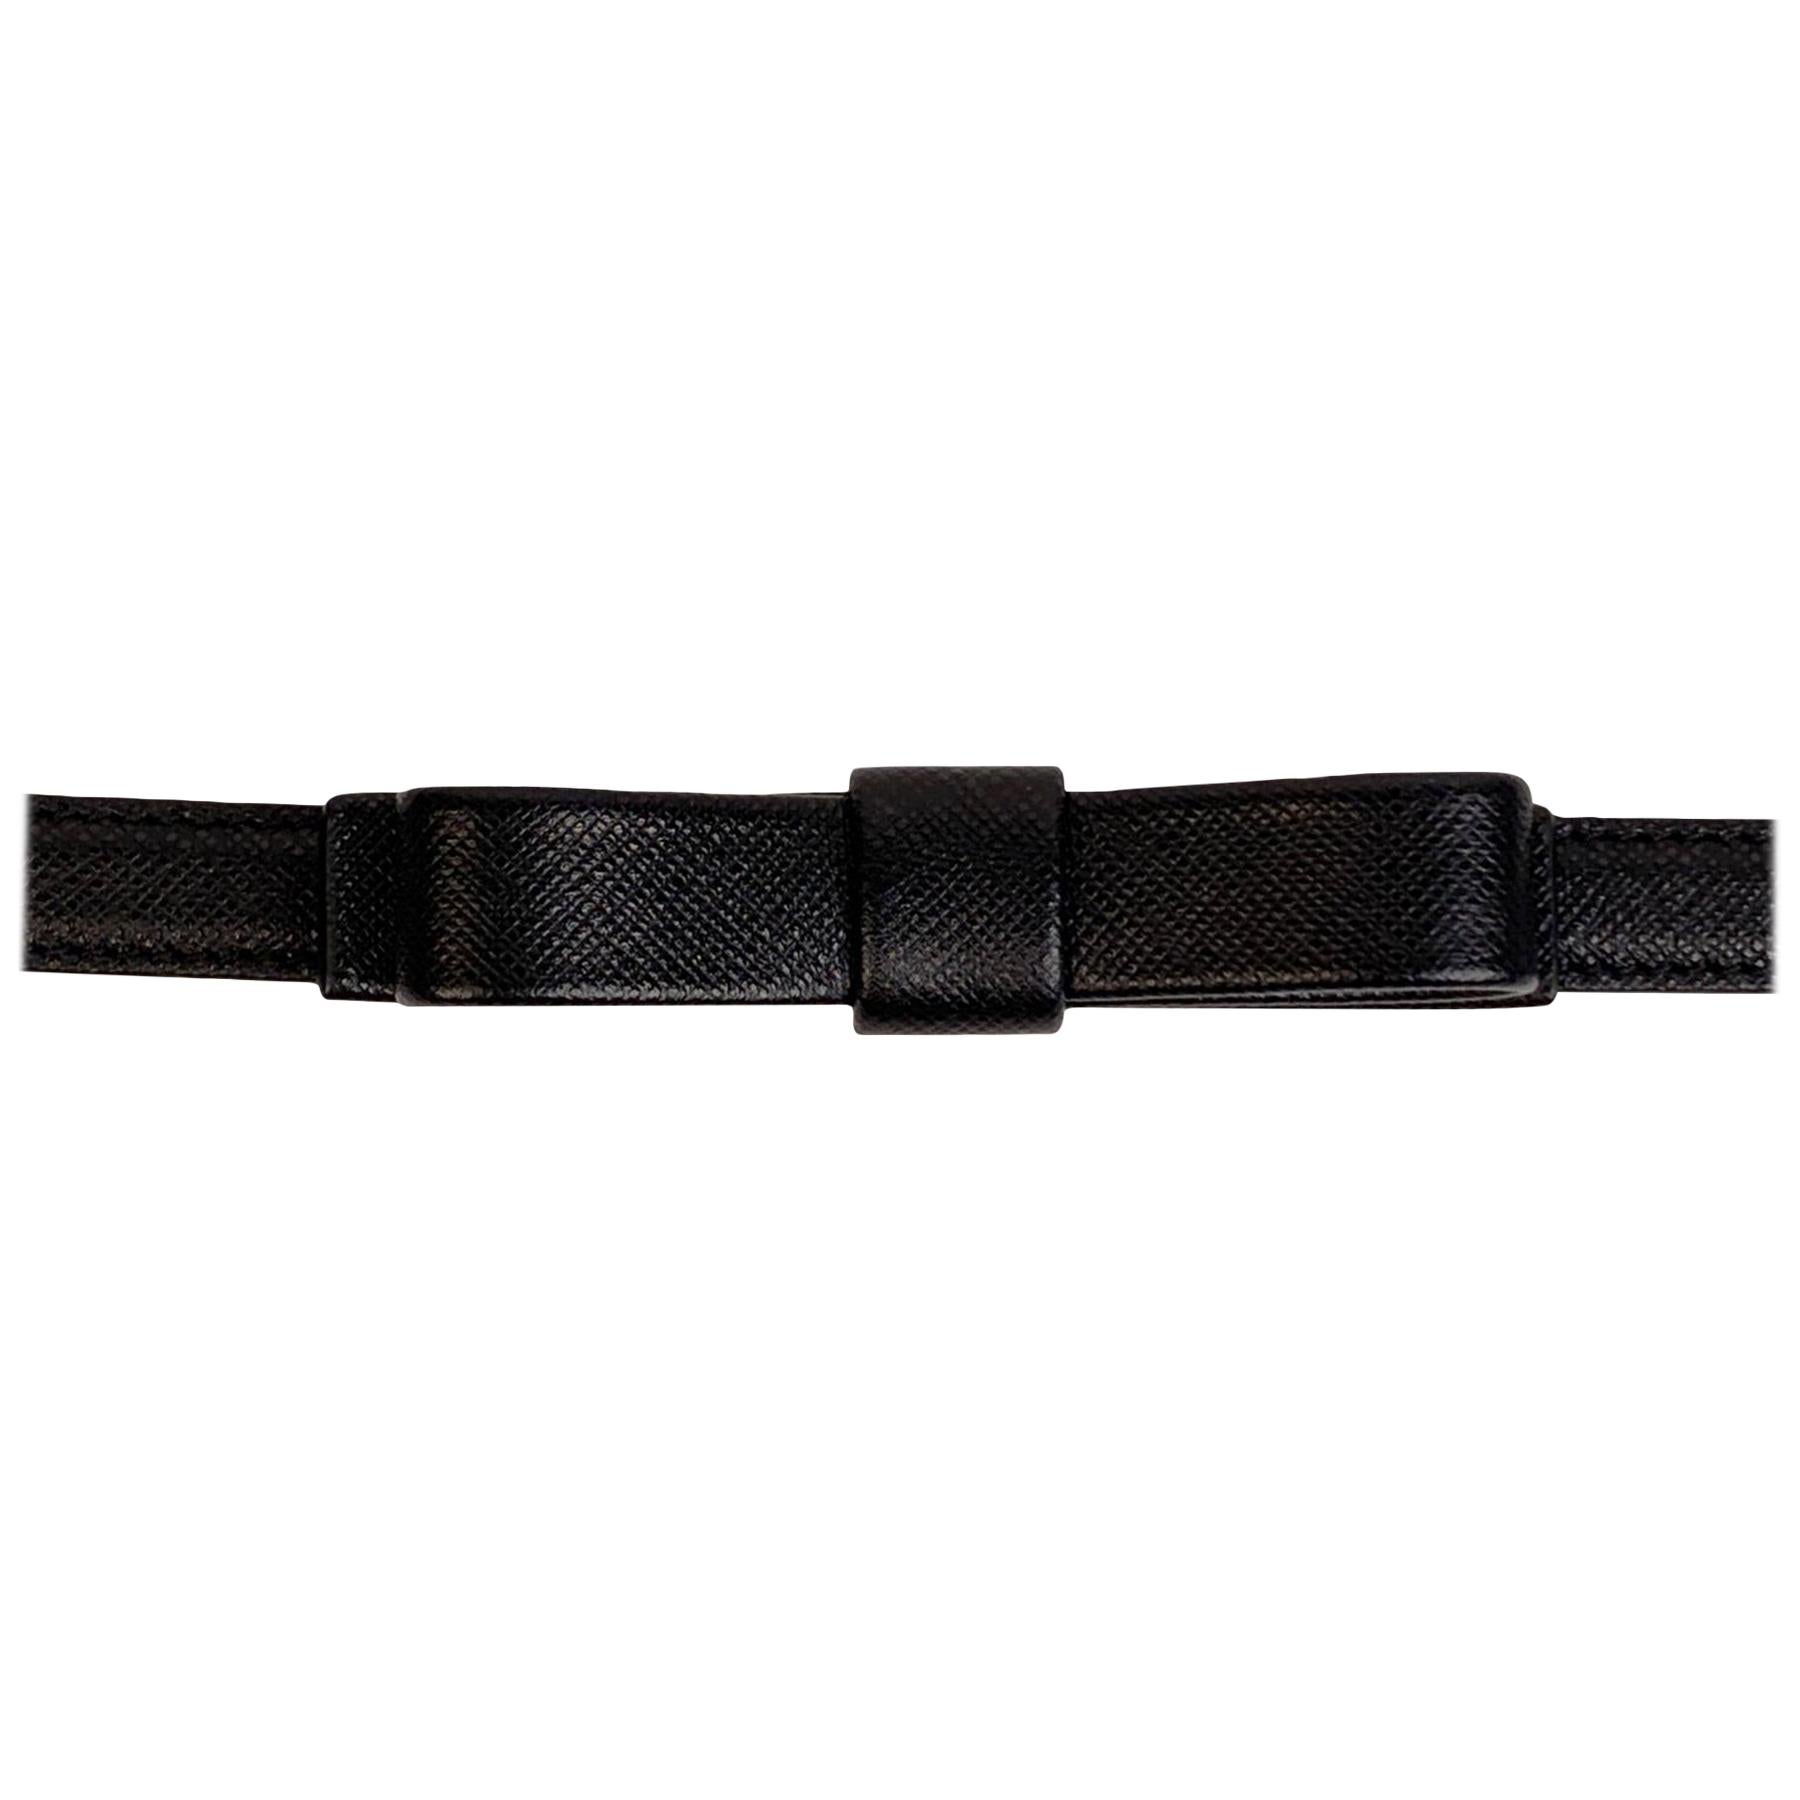 Prada Black Saffiano Leather Bow Skinny Belt Size 85/34